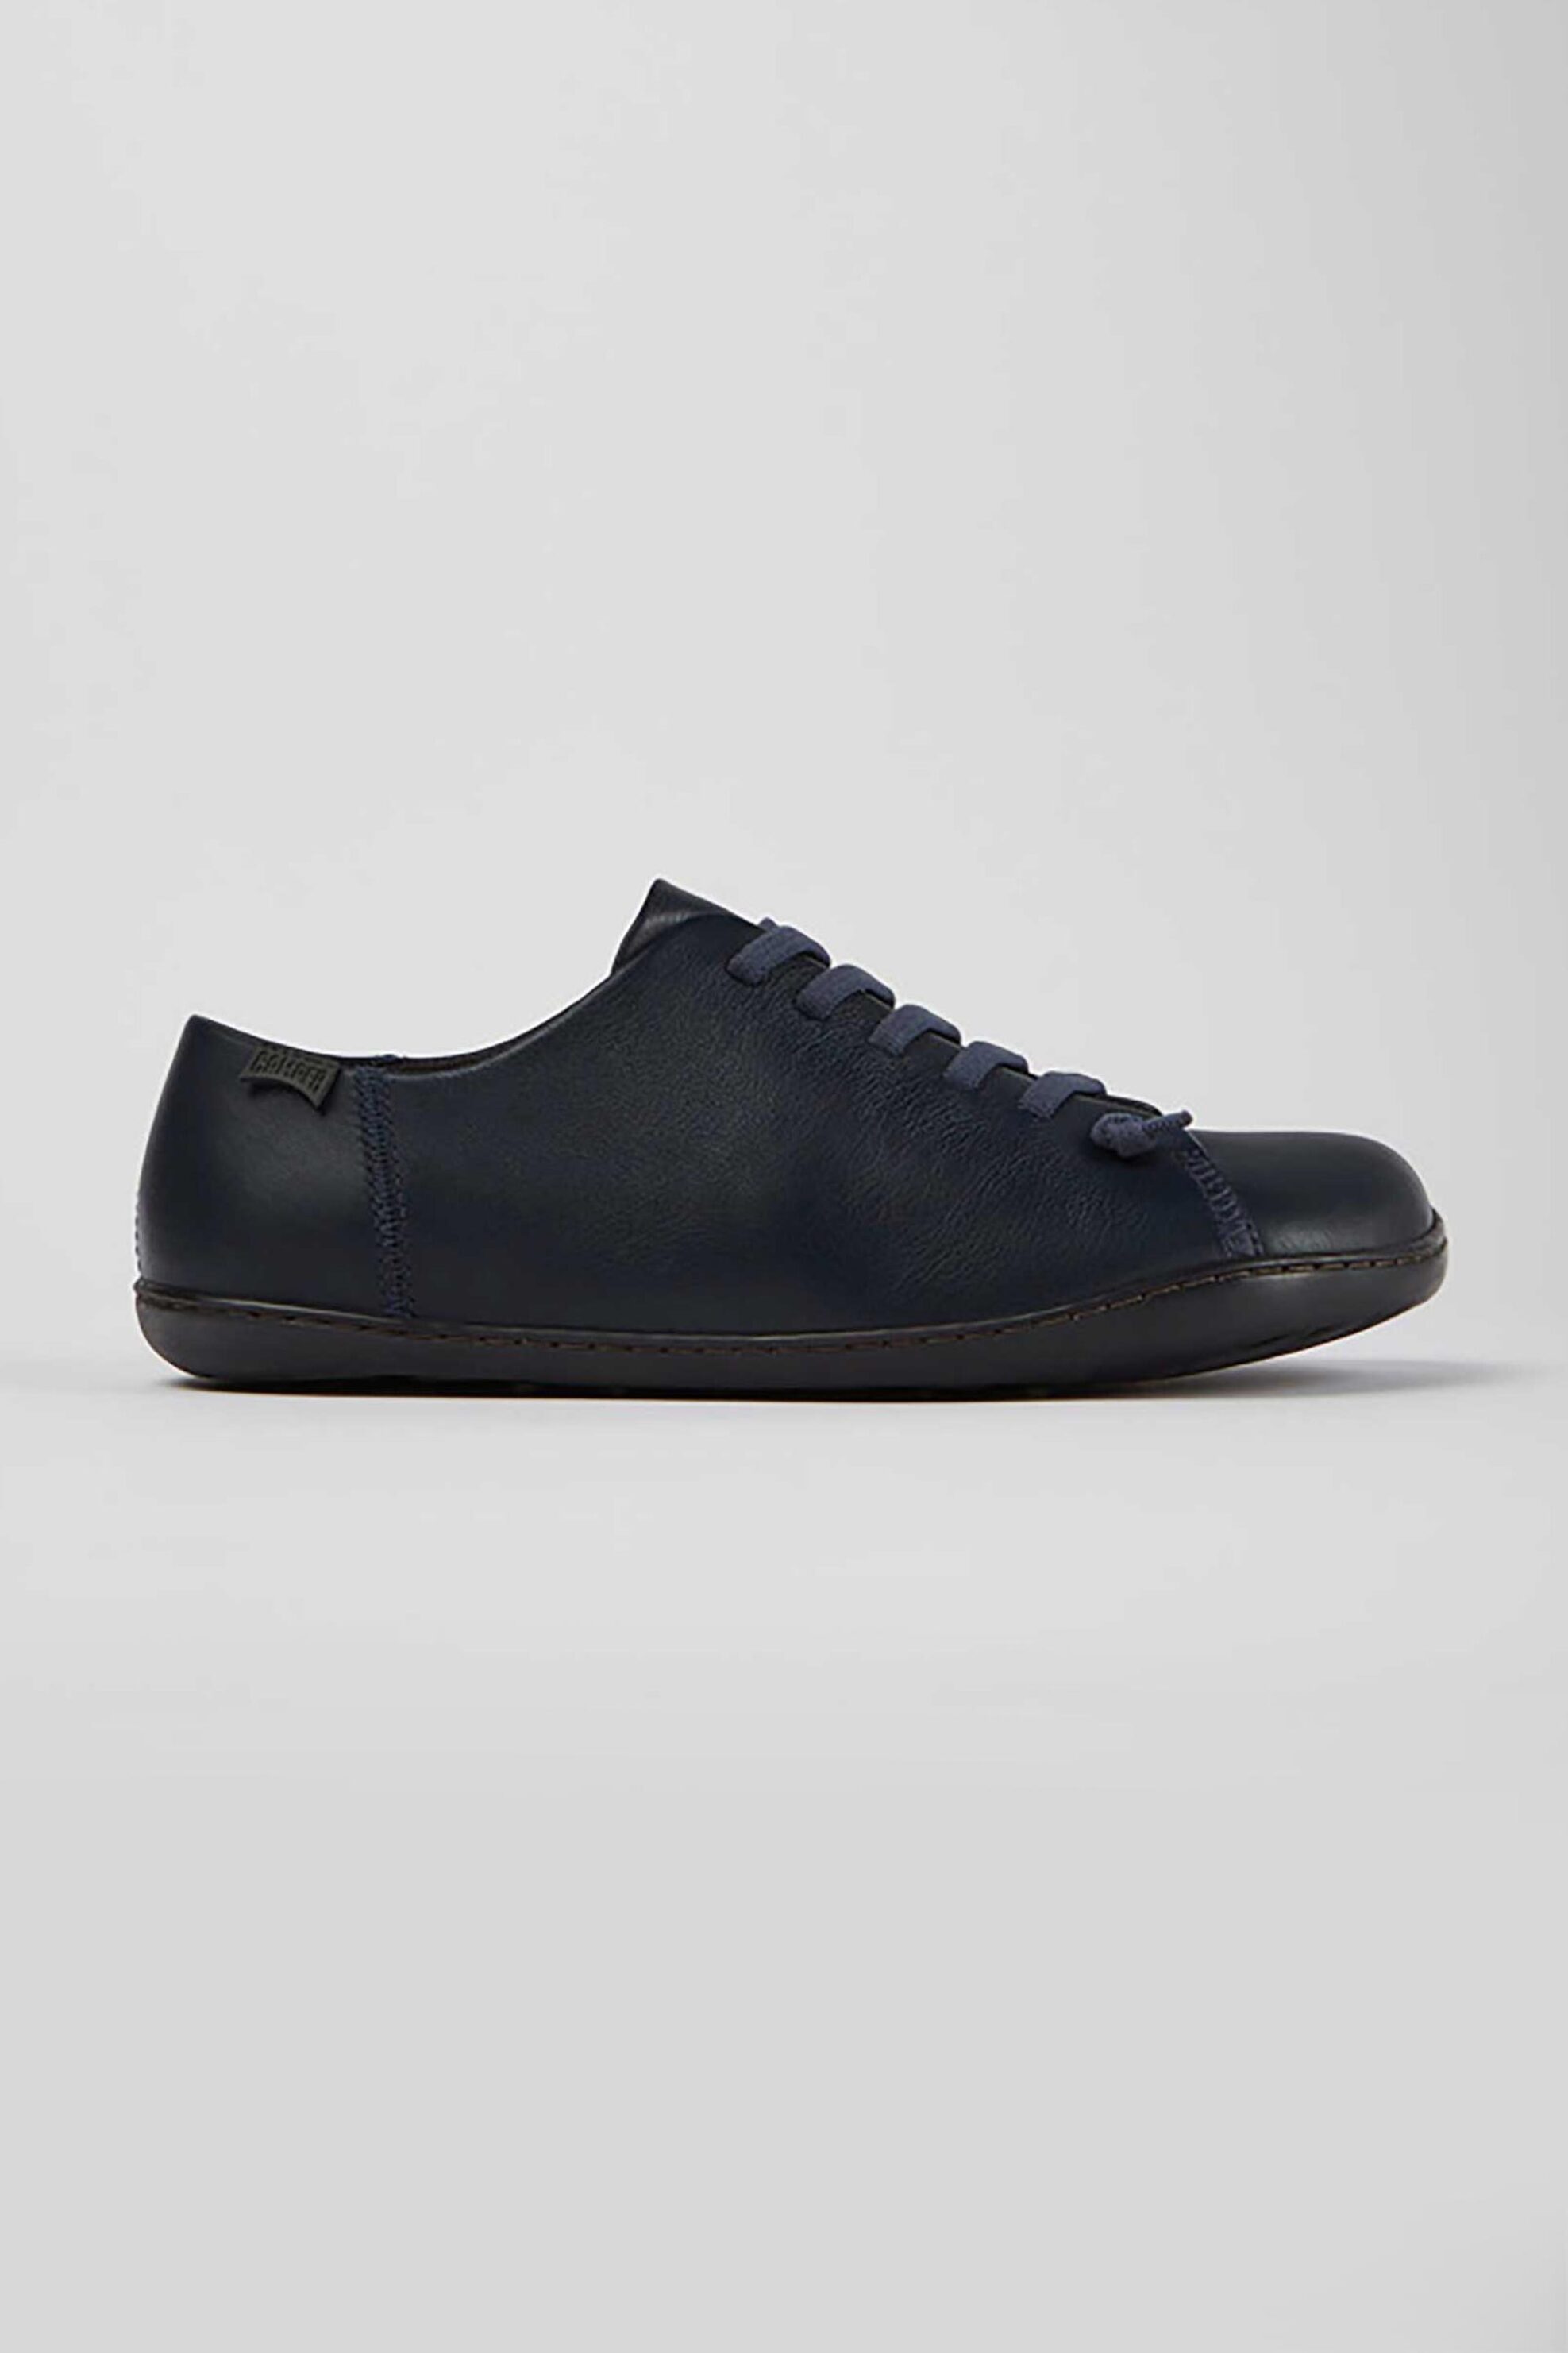 Ανδρική Μόδα > Ανδρικά Παπούτσια > Ανδρικά Sneakers Camper ανδρικά δερμάτινα sneakers "Peu" - K100249-049 Μπλε Σκούρο